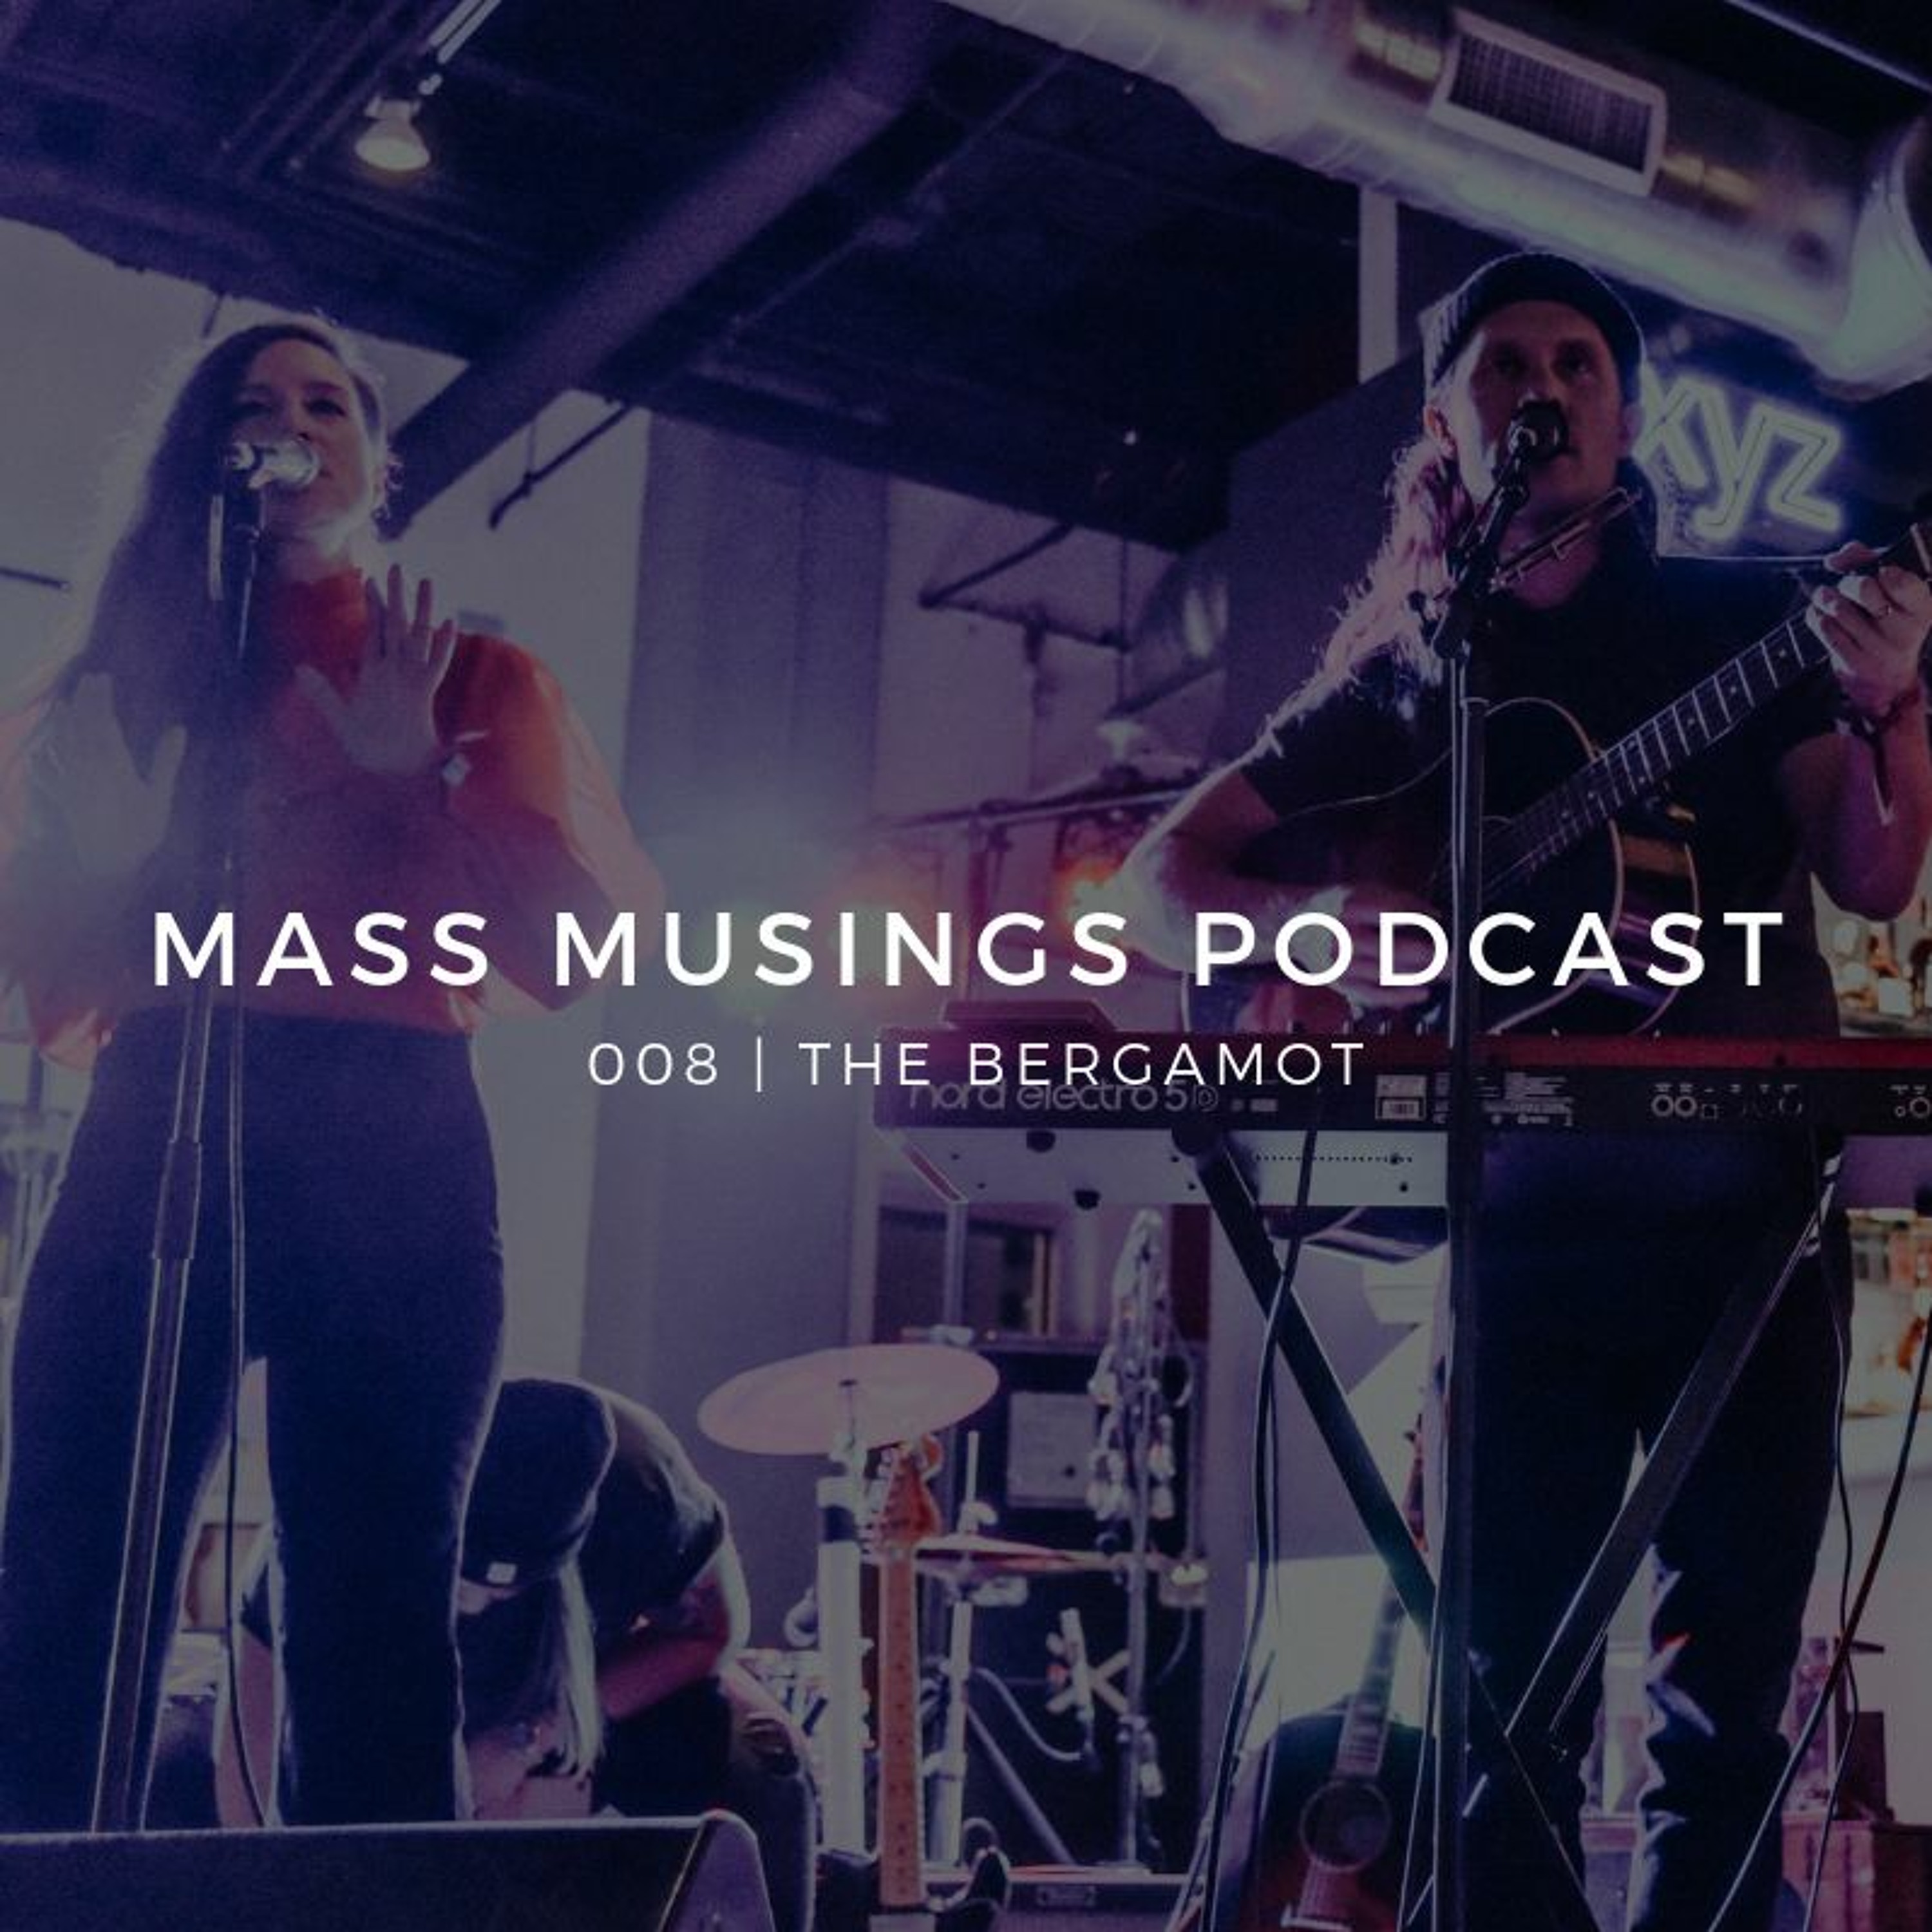 Mass Musings Podcast 008 | The Bergamot